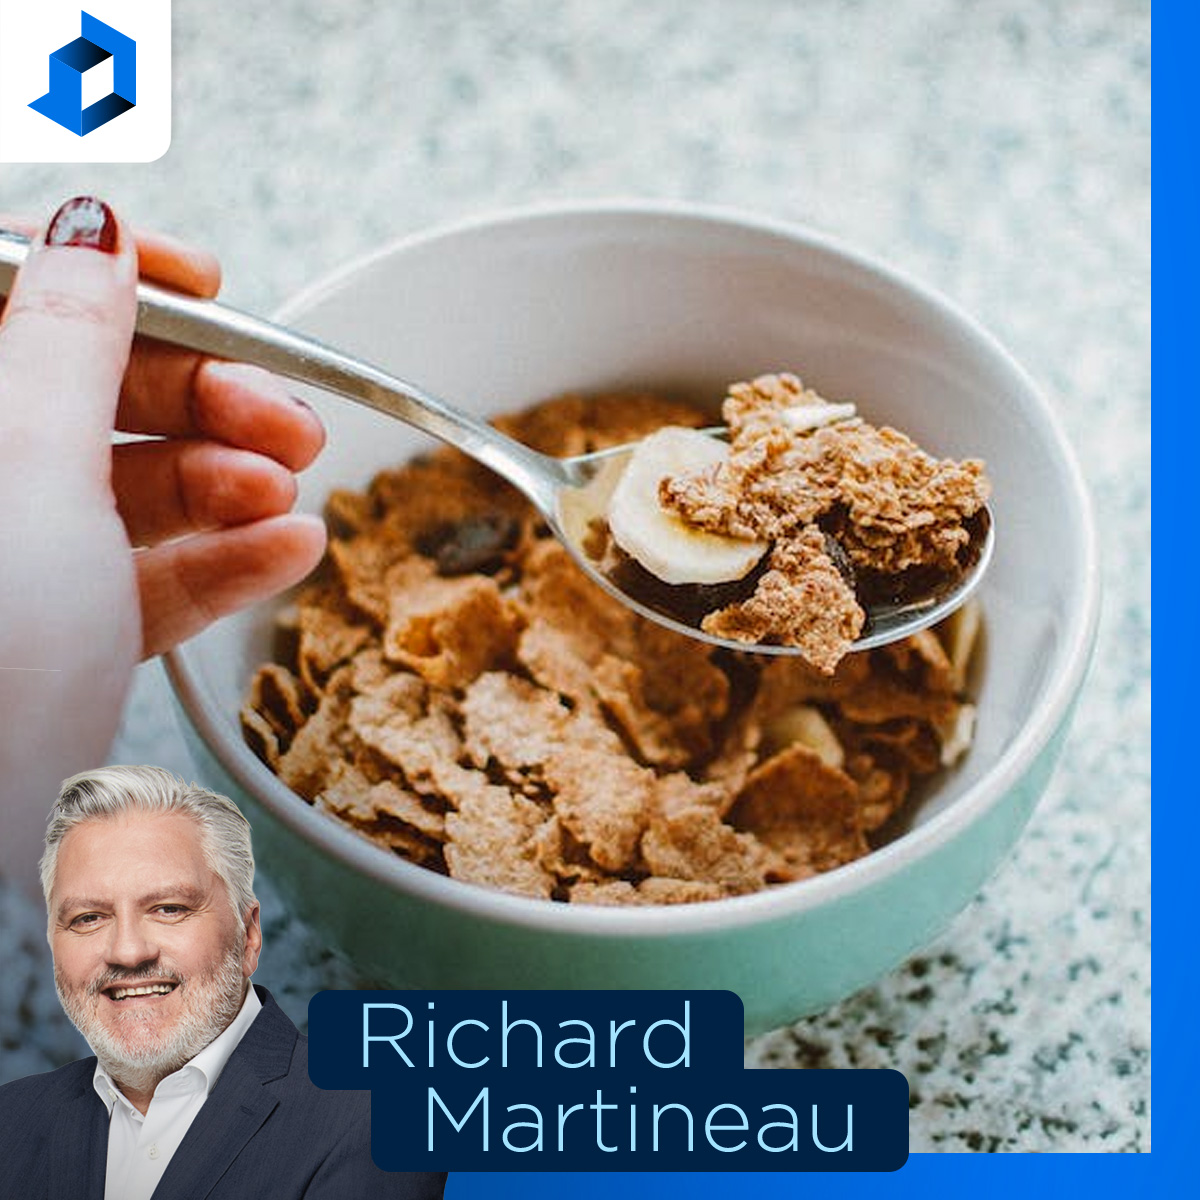 «Je veux savoir ce que PSPP met dans ses céréales», lance Martineau